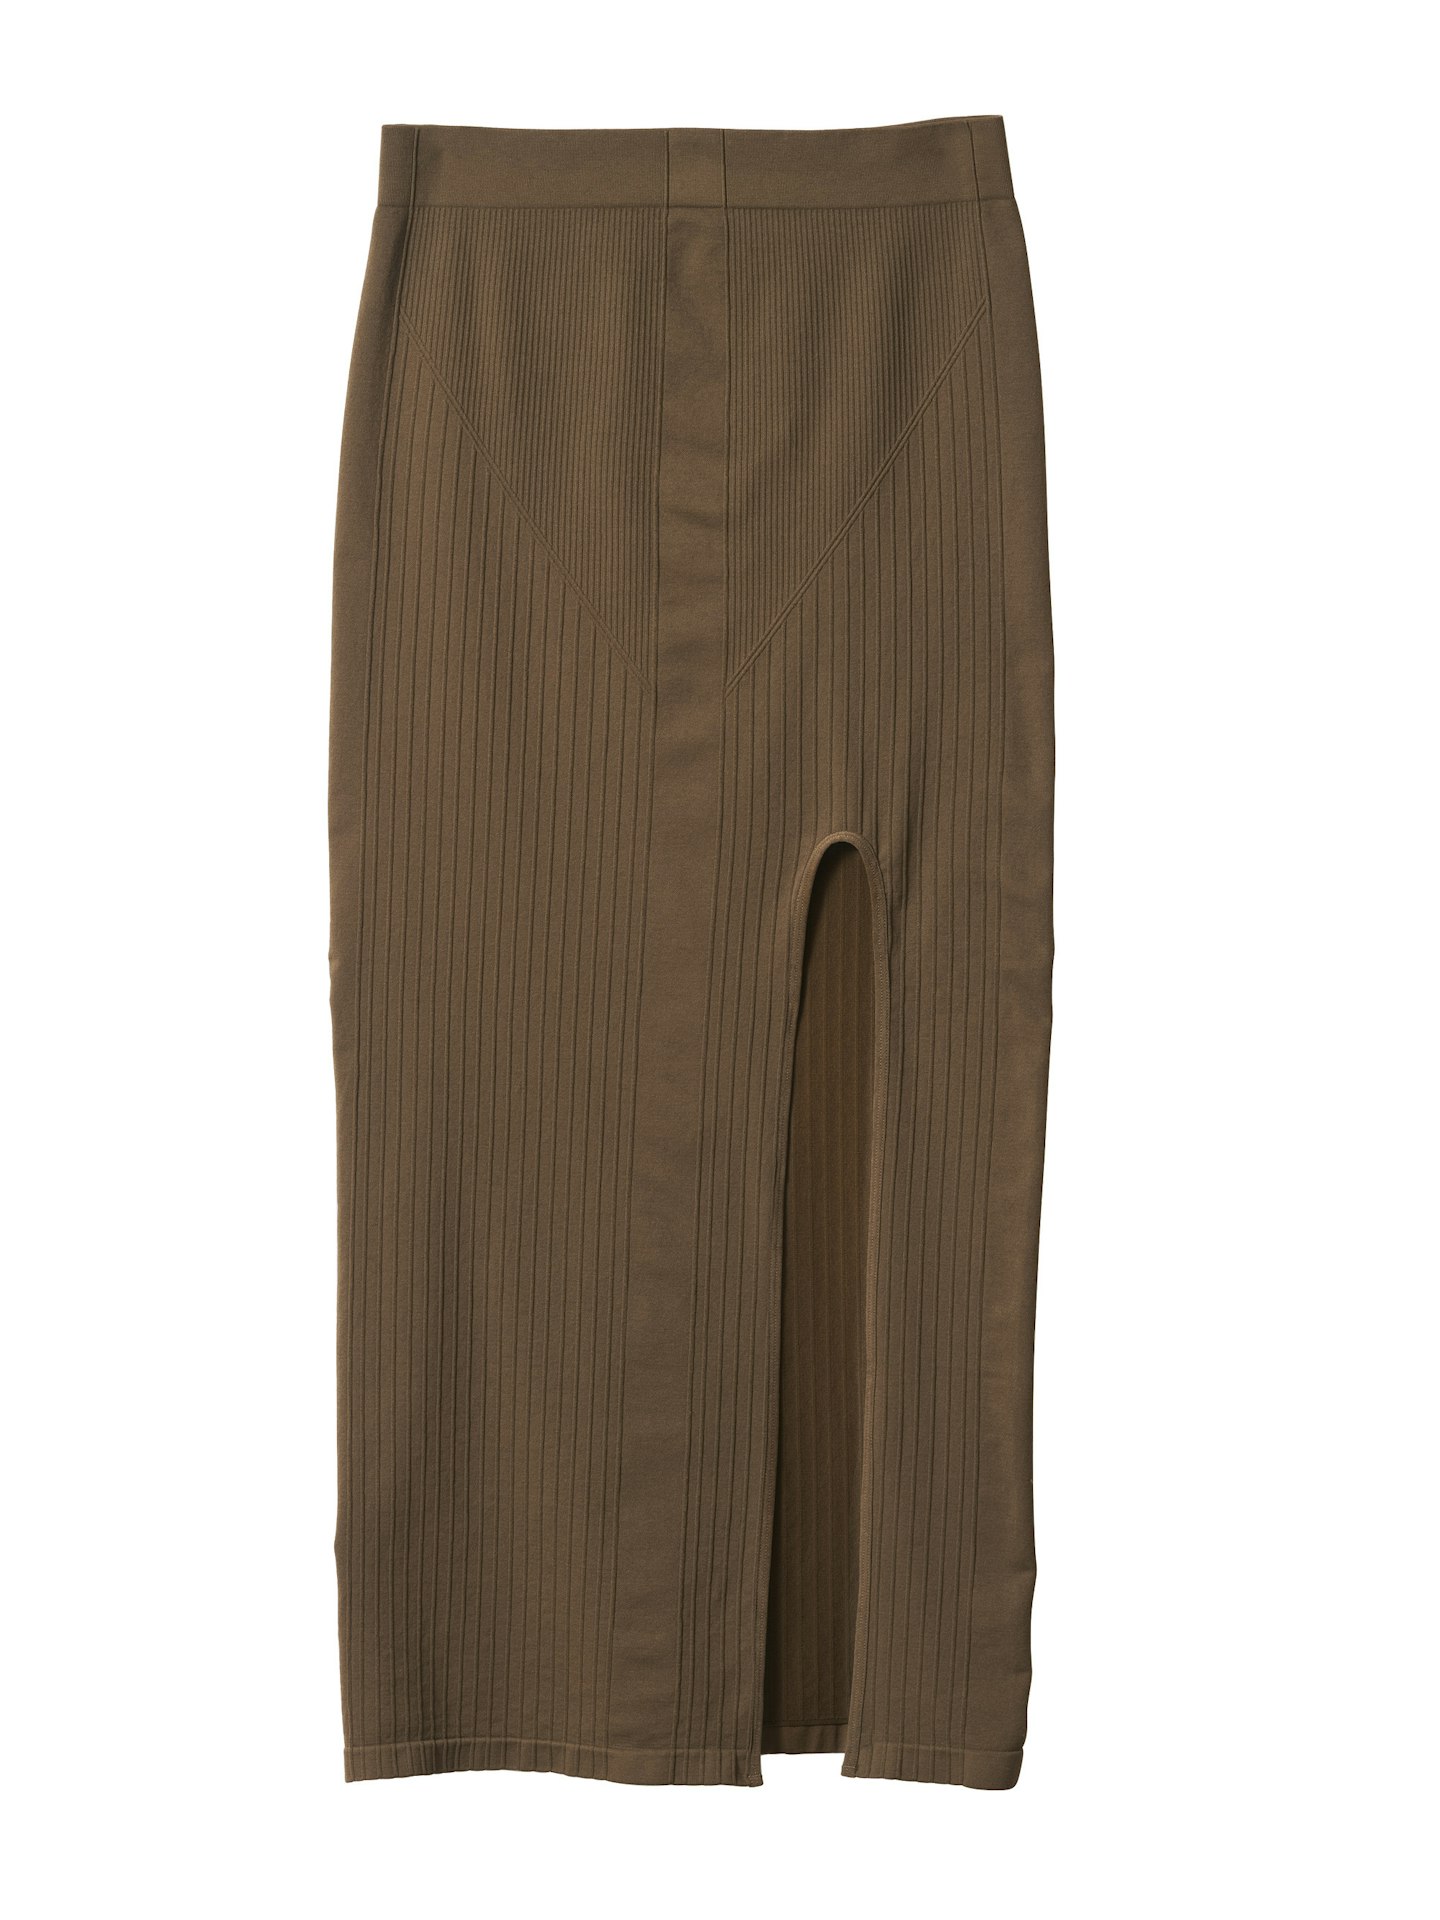 Seamless Skirt, £34.99